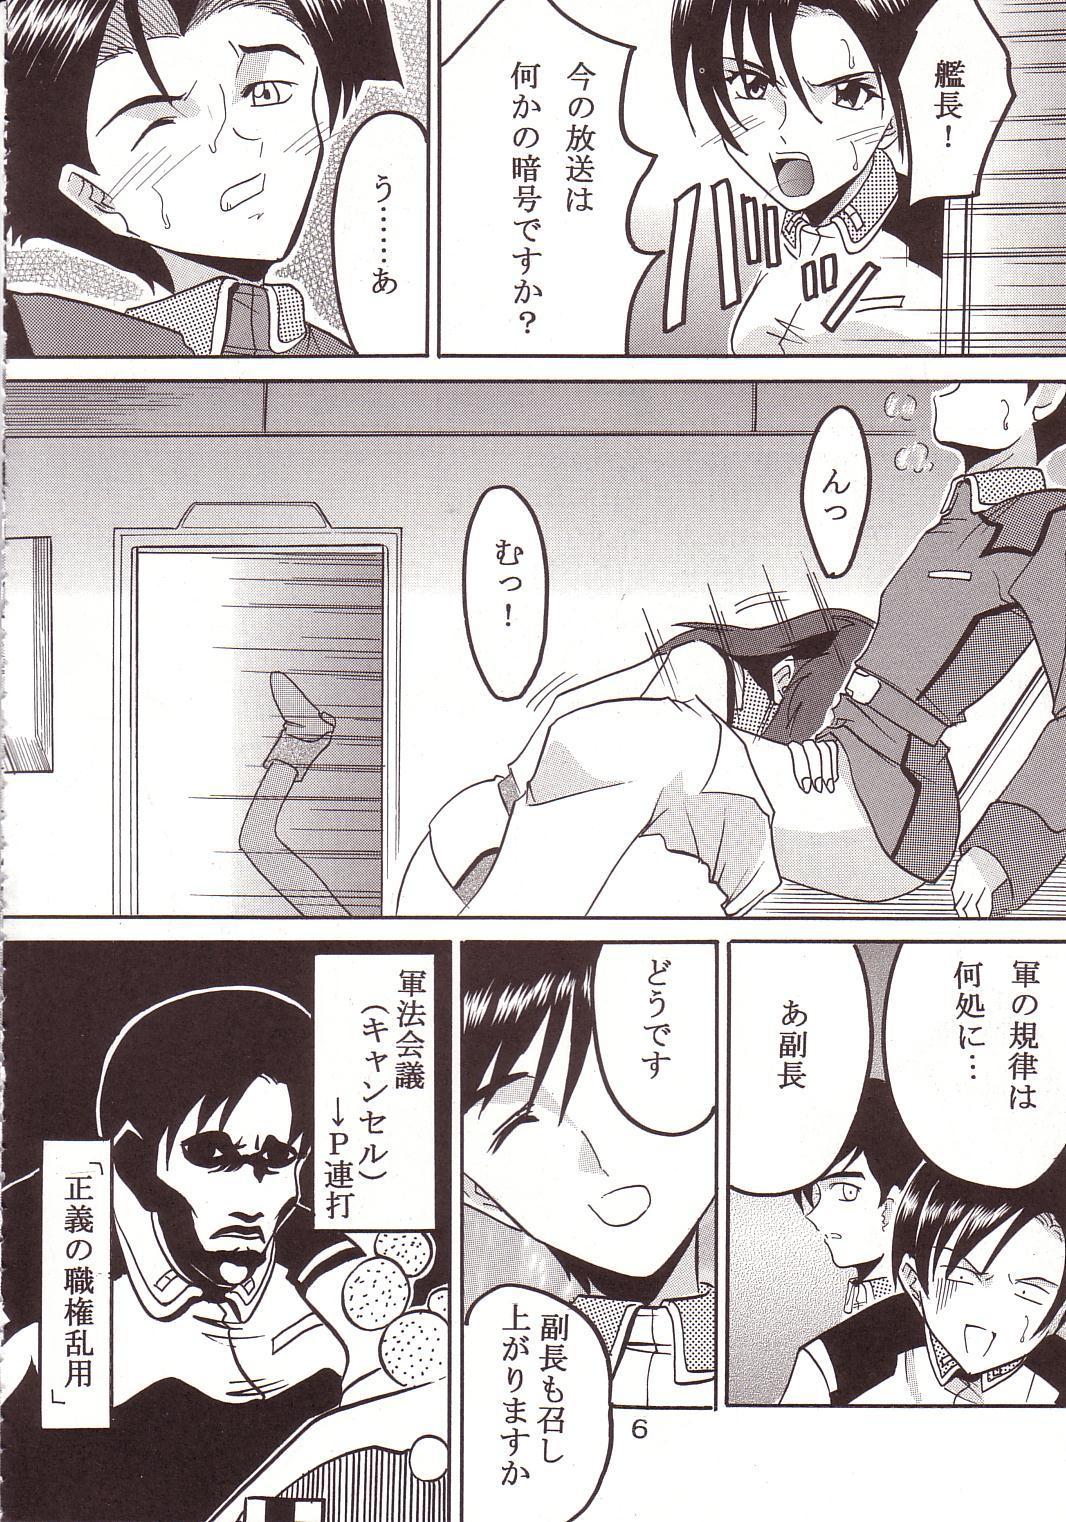 Banging SEED 3 - Gundam seed Creampies - Page 7